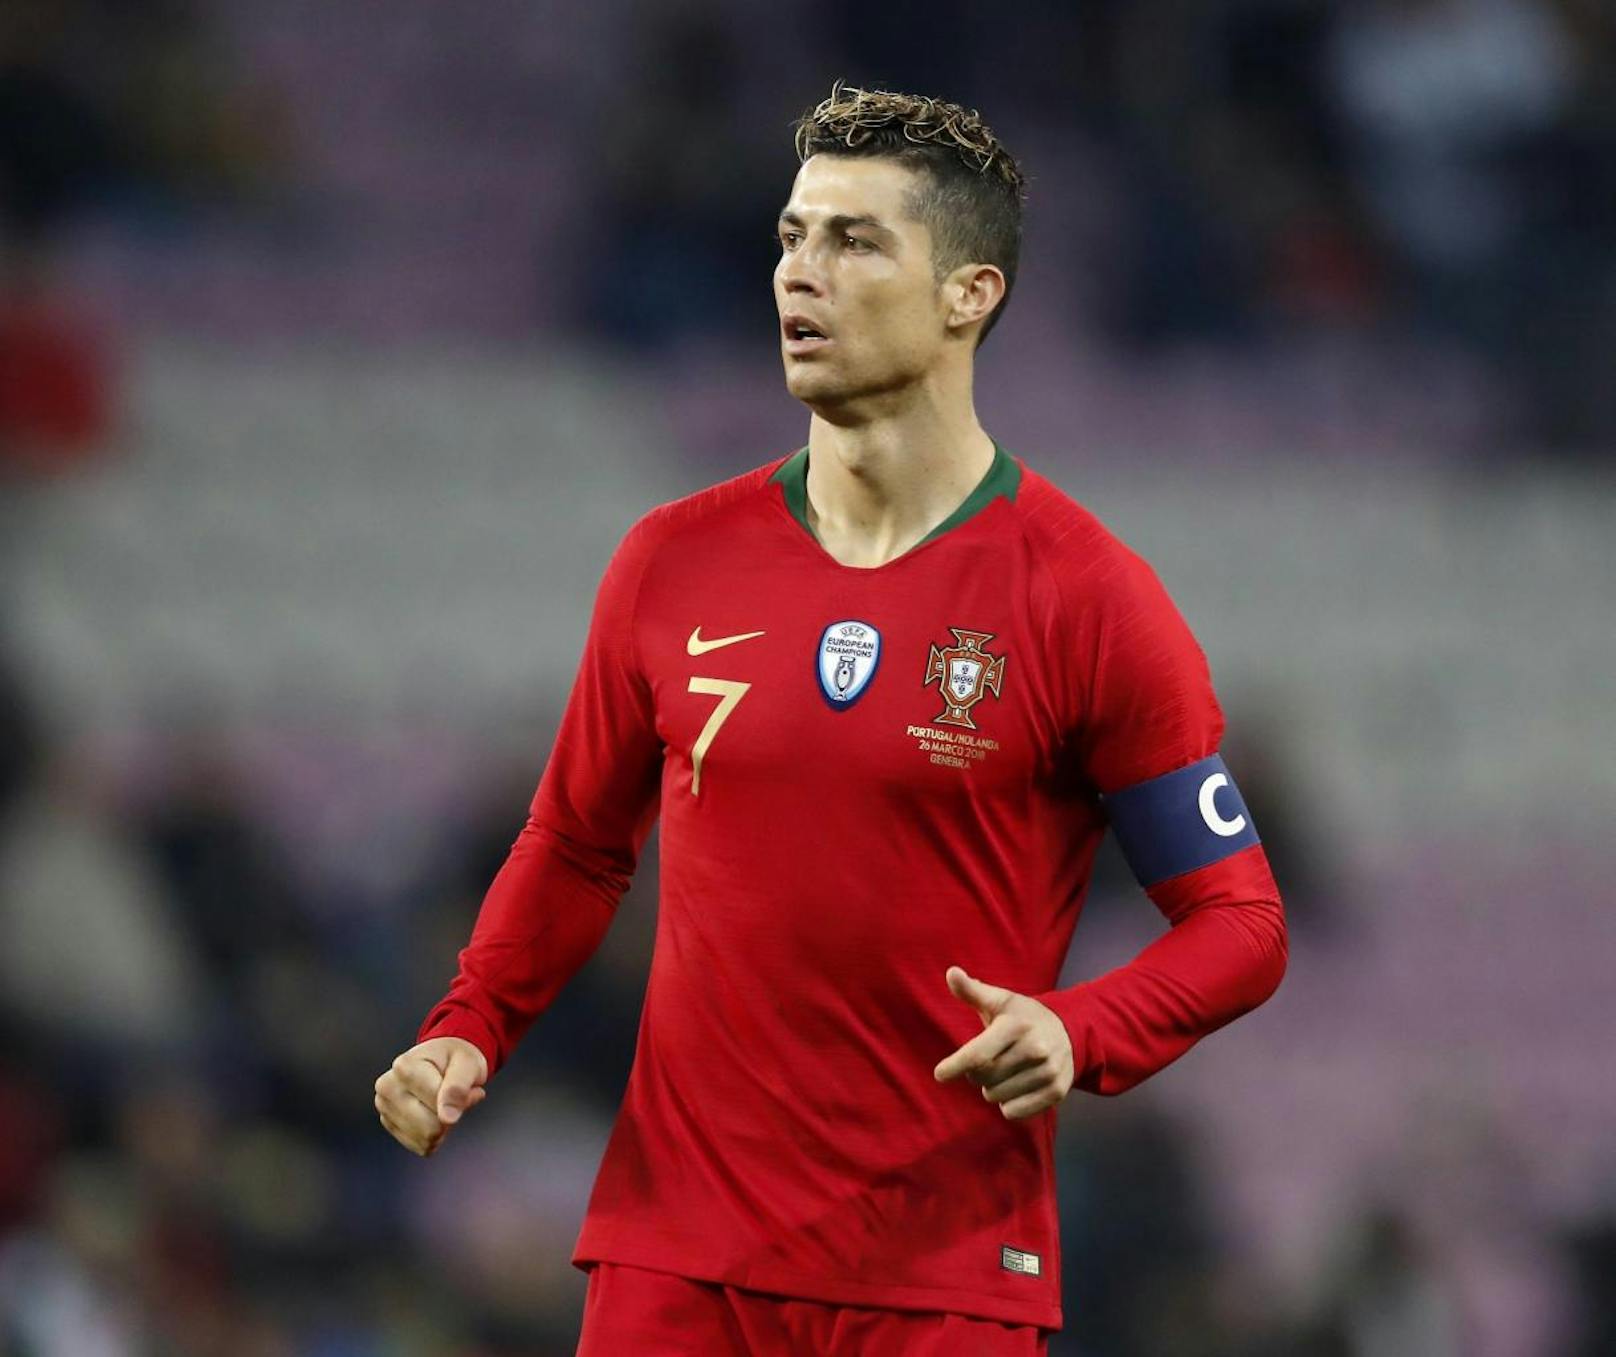 Cristiano Ronaldo - Portugal: Der Real-Superstar führte seine "Selecao" zum Europameistertitel 2016. Doch bei WM-Endrunden lief es bisher nicht nach Wunsch. Er traf in 13 Spielen nur drei Mal! In Russland kann er diese Quote steigern.